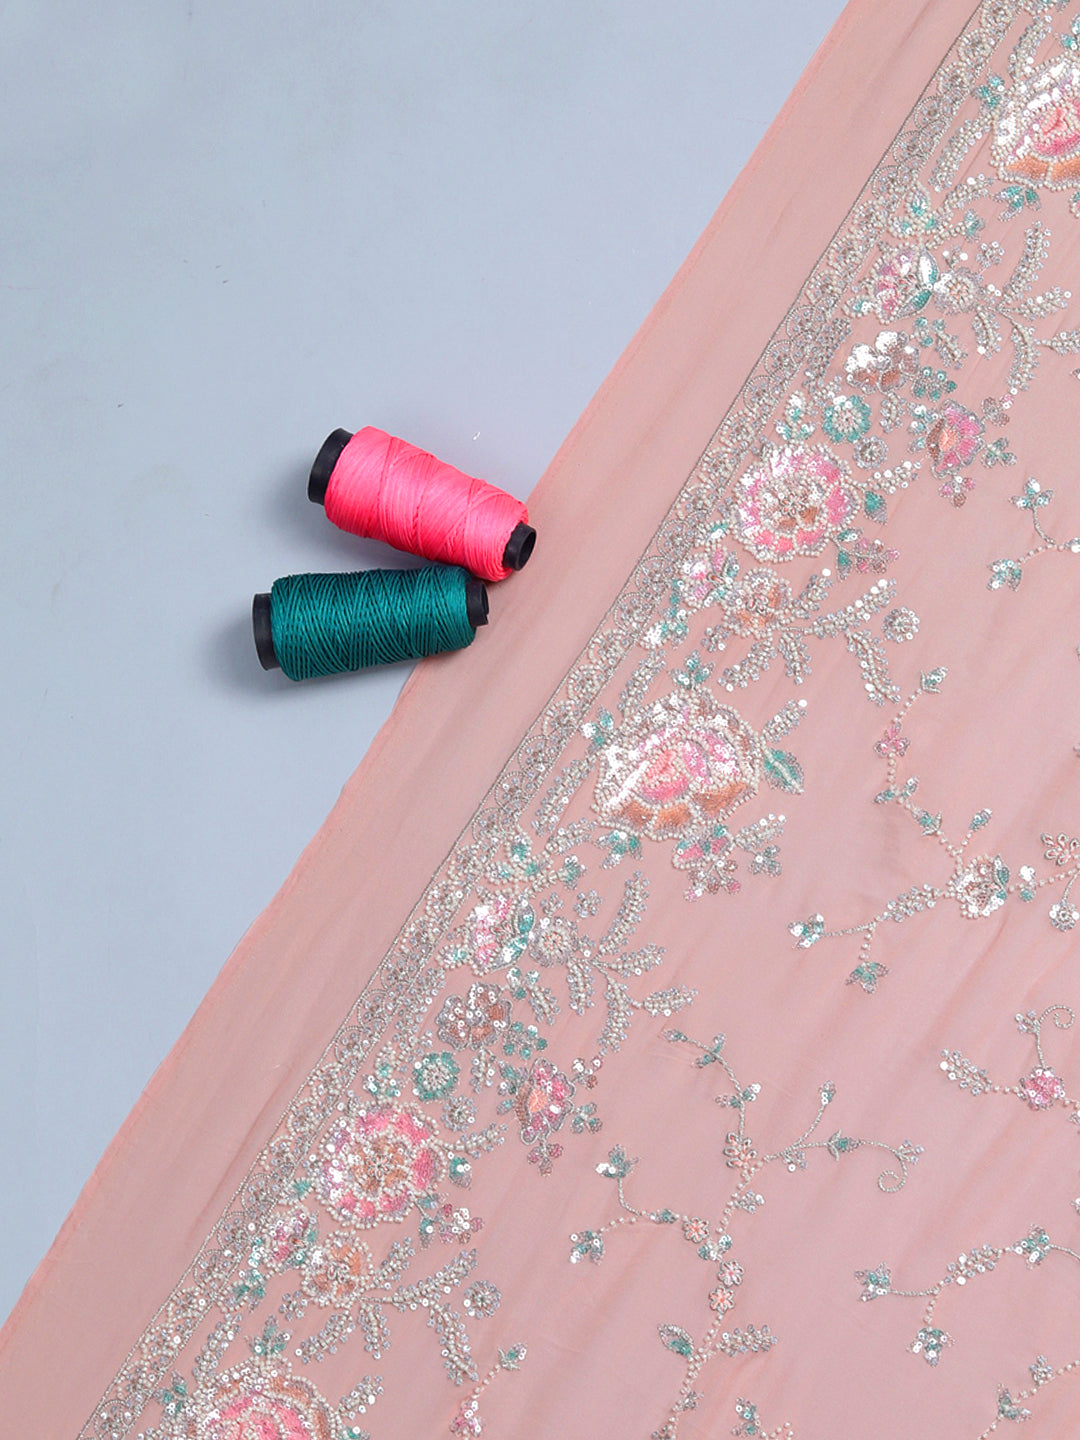 Pastel Pink Threadwork Georgette Fabric